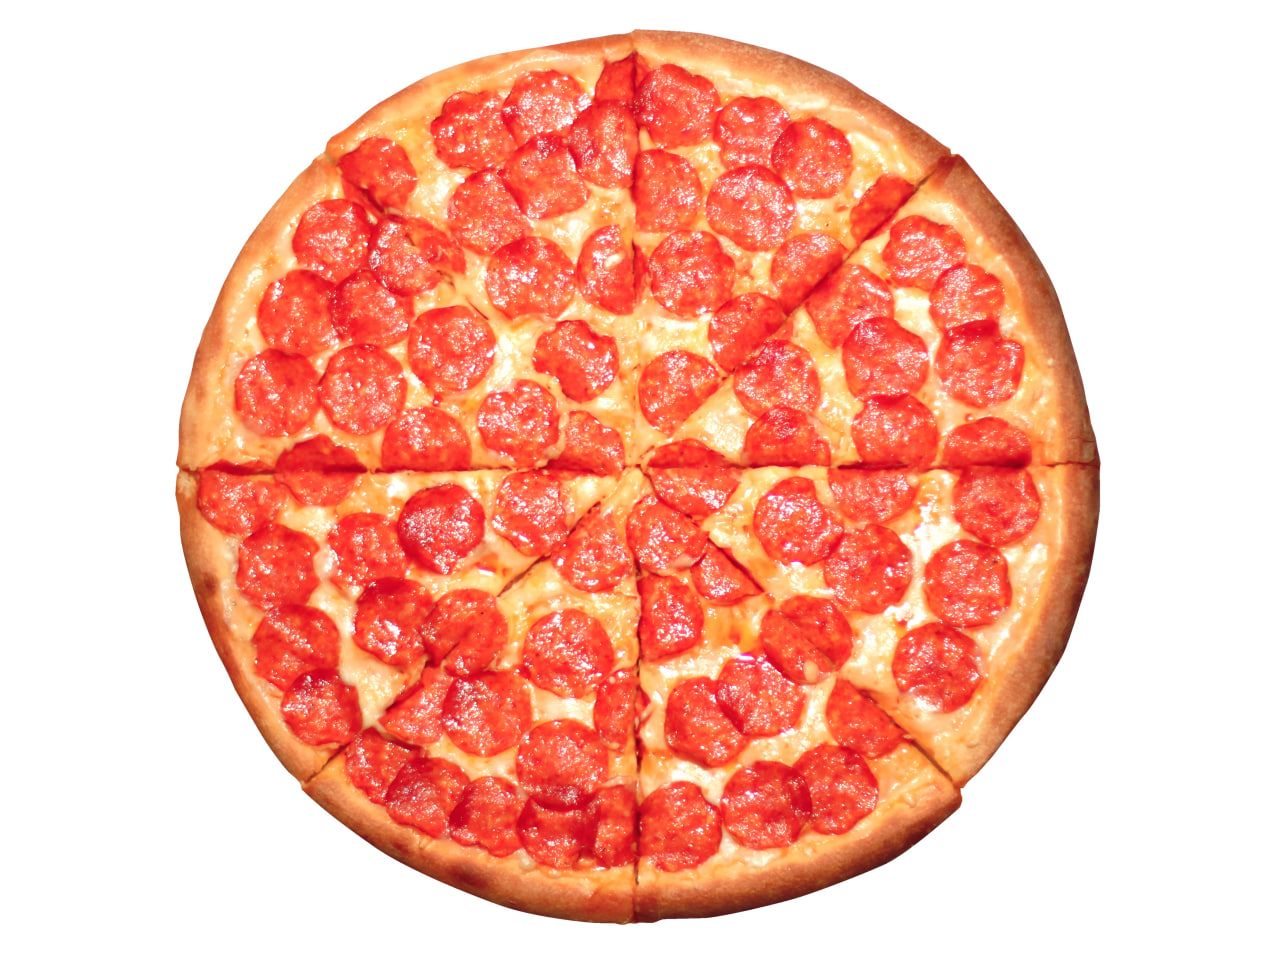 Пицца 24 см. Зотман пицца пепперони. Экспресс пицца пепперони. Супер пицца.